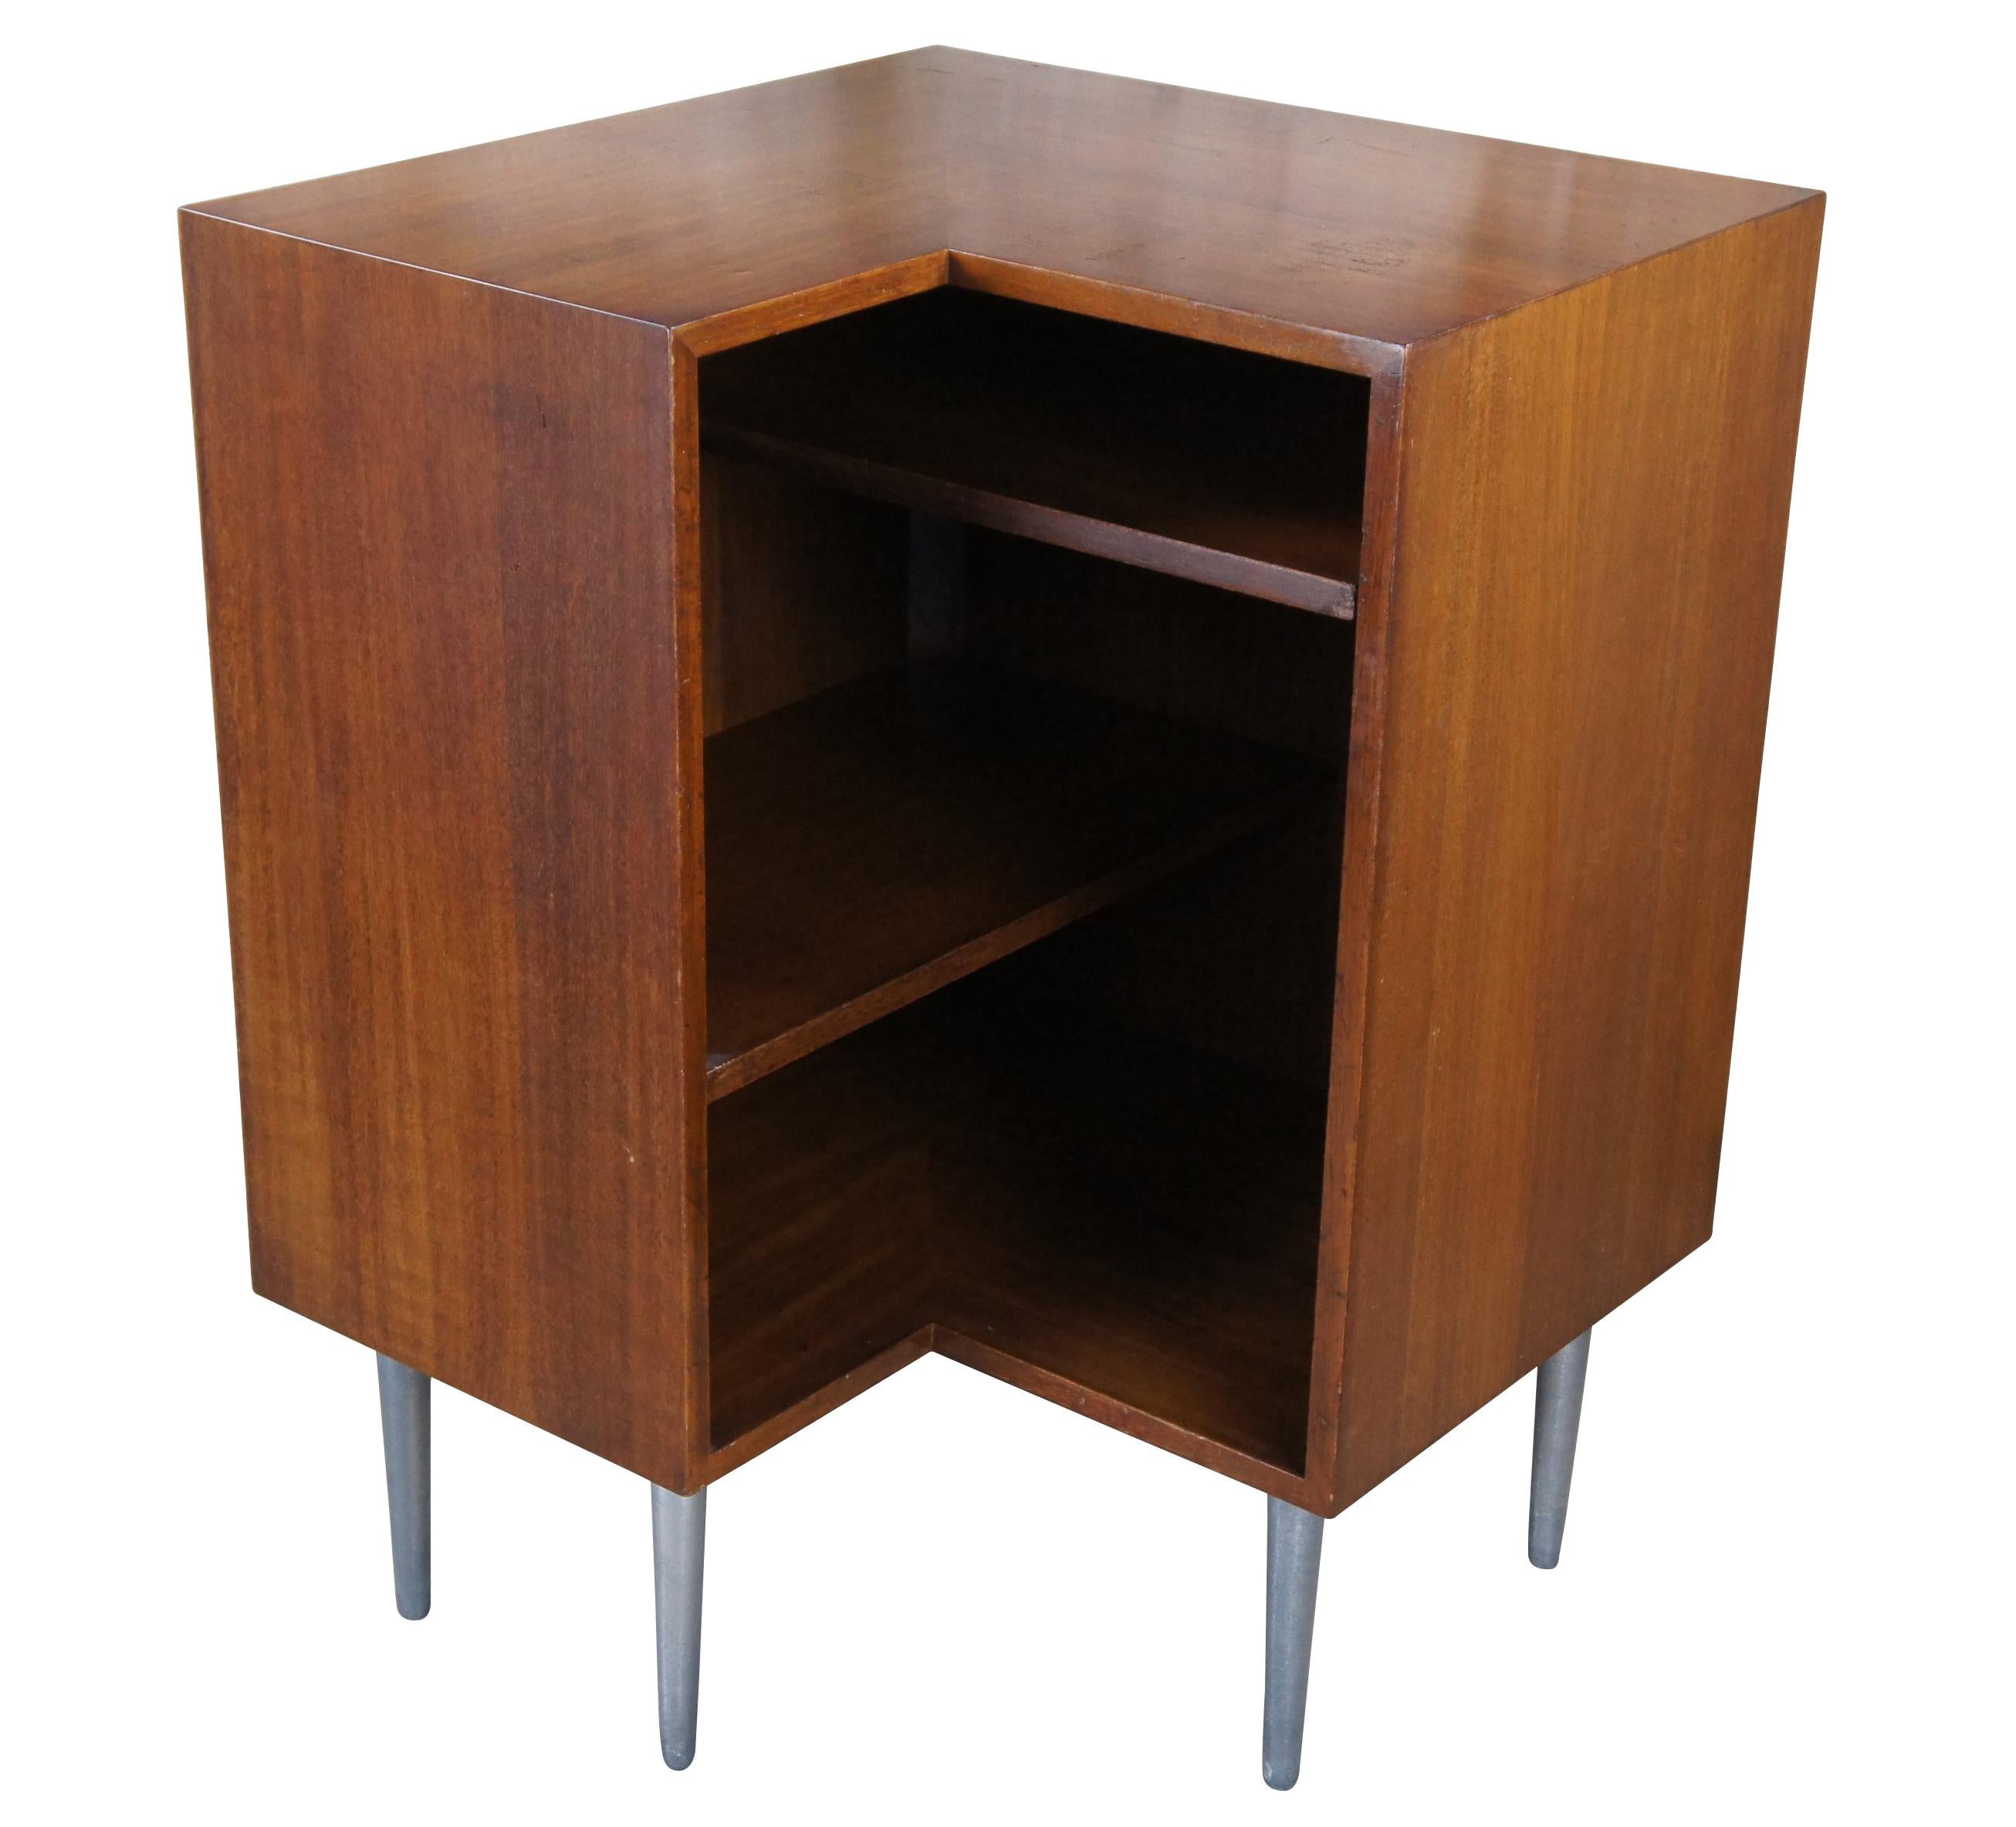 Console d'angle Edward Wormley pour Dunbar Furniture, moderne du milieu du siècle dernier.  Fabriquée en noyer, elle présente une forme cubiste modulaire en 